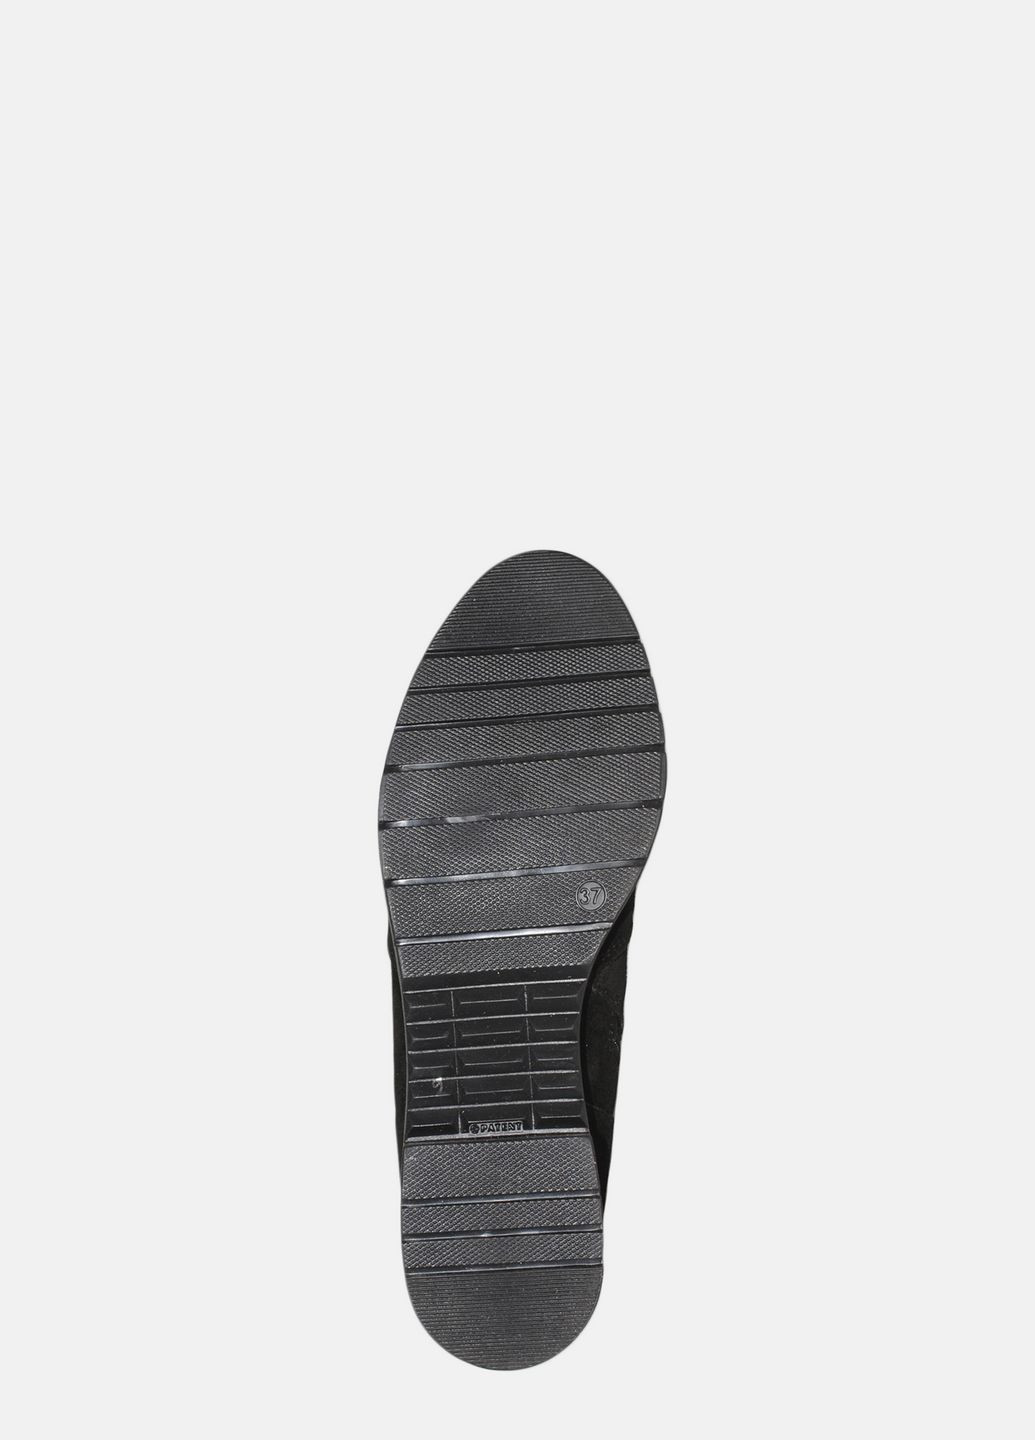 Зимние ботинки rm24-213-11 черный Mioli из натуральной замши